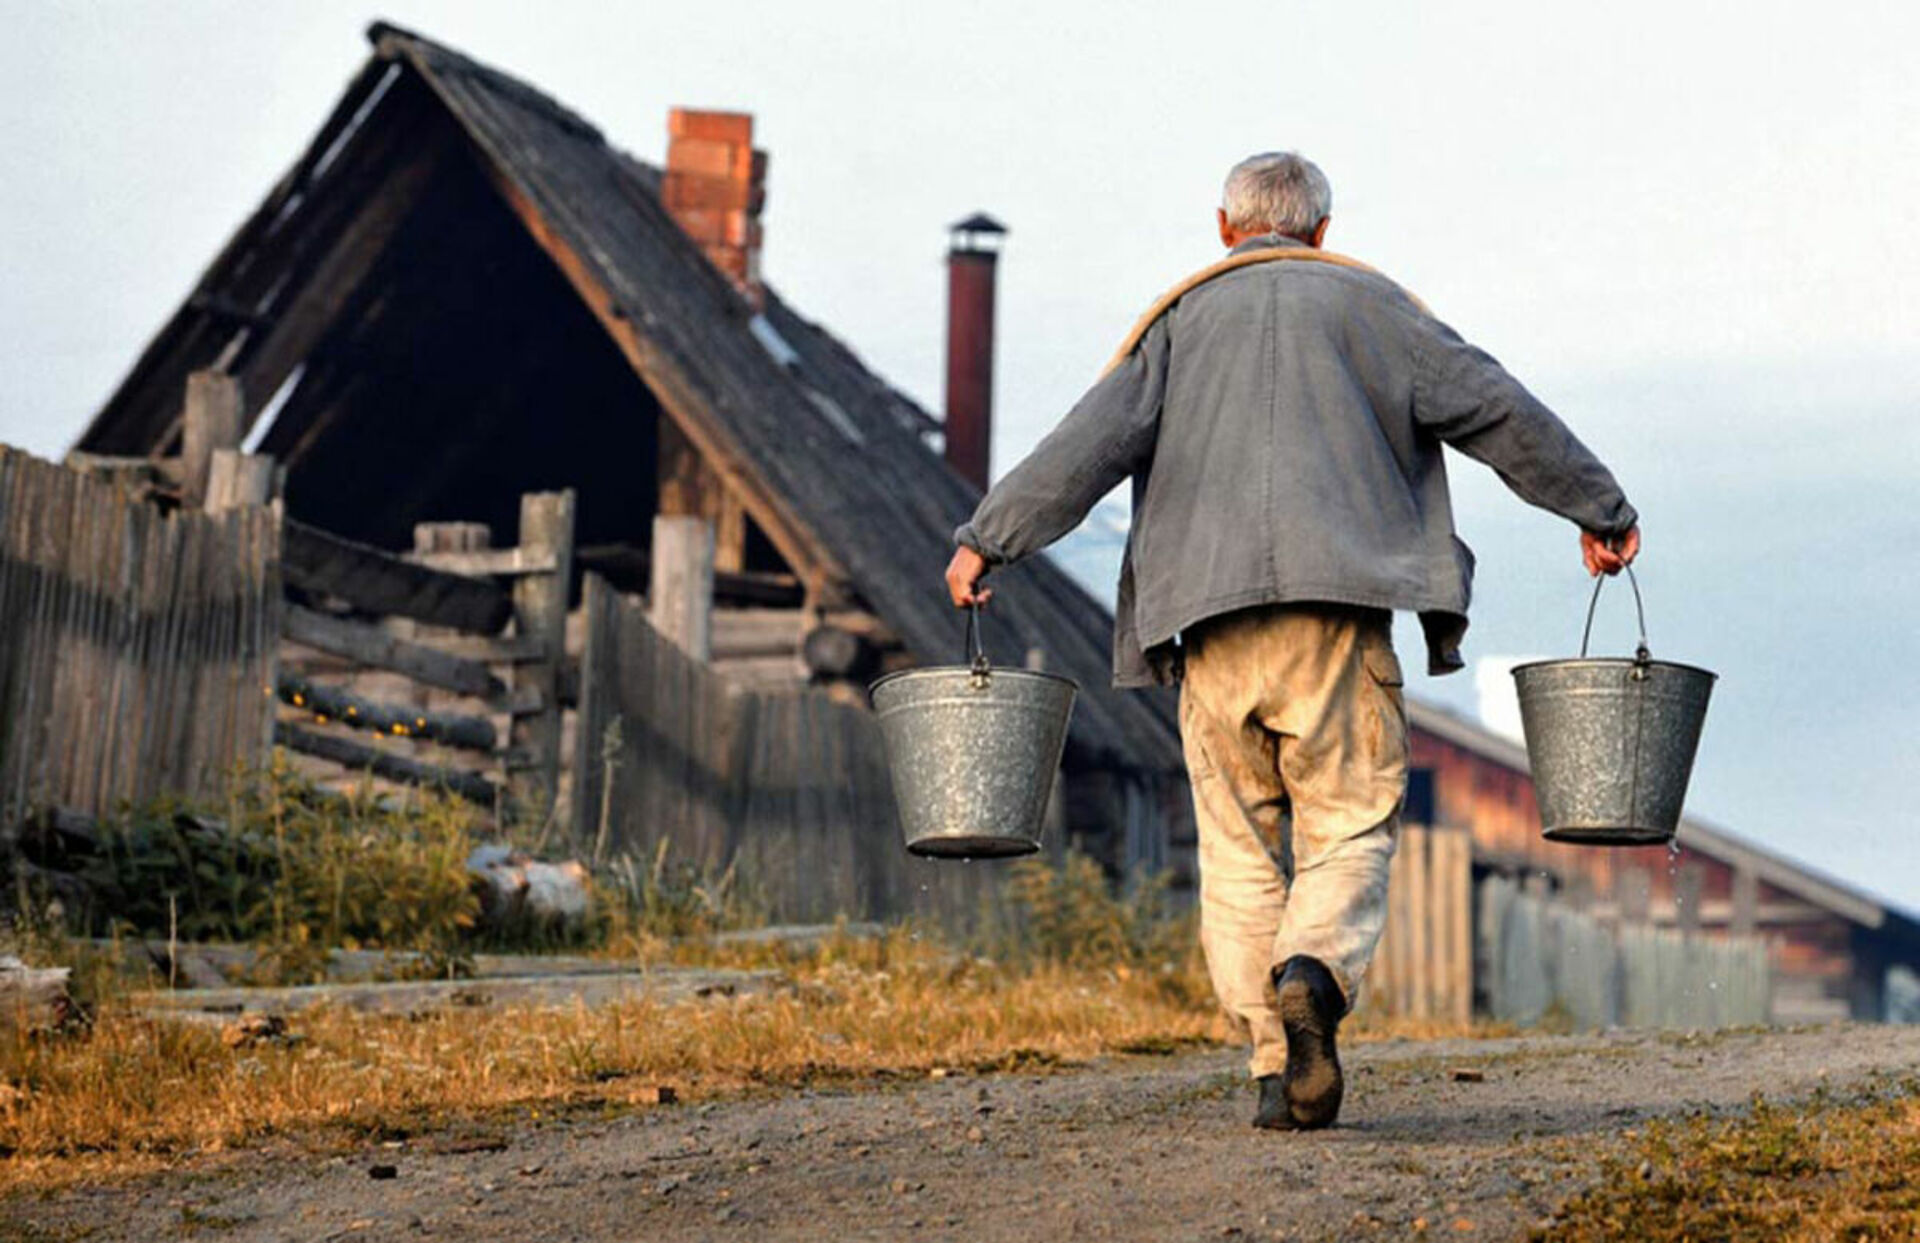 Как жить на улице человеку. Люди в деревне. Пенсионеры в деревне. Жители сельской местности. Безработица в деревне.